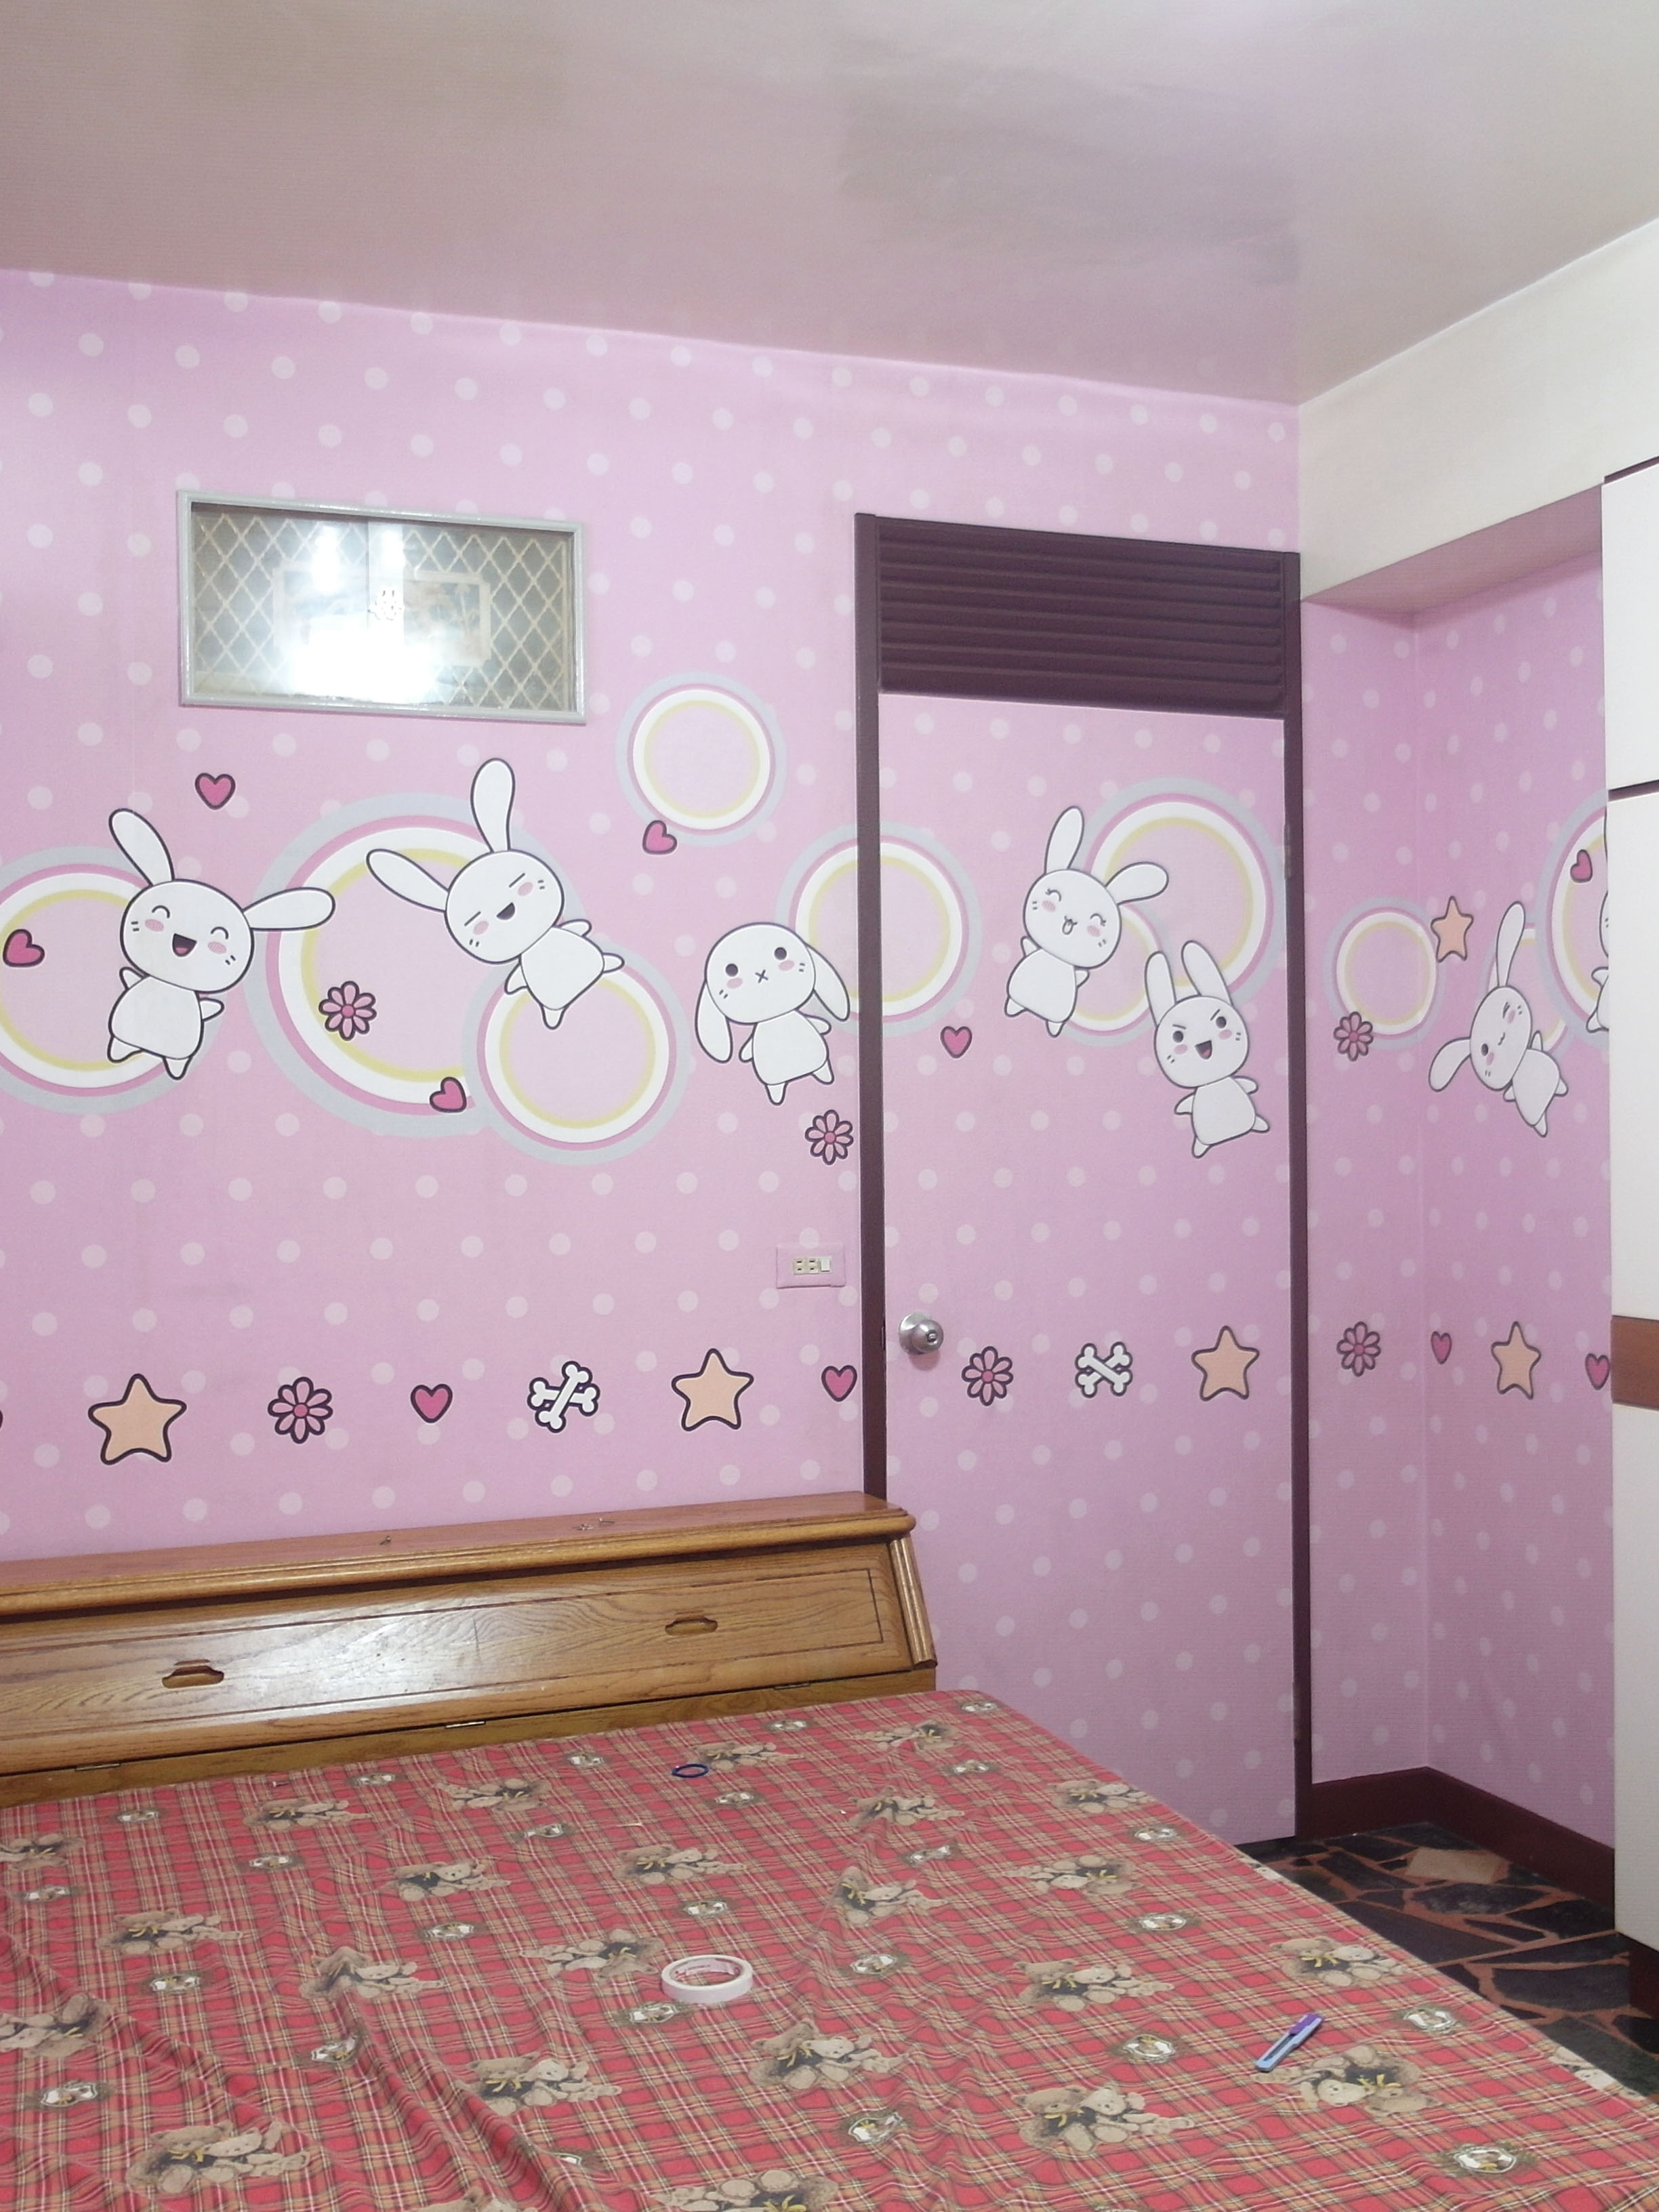 壁面張貼案例-親子臥室